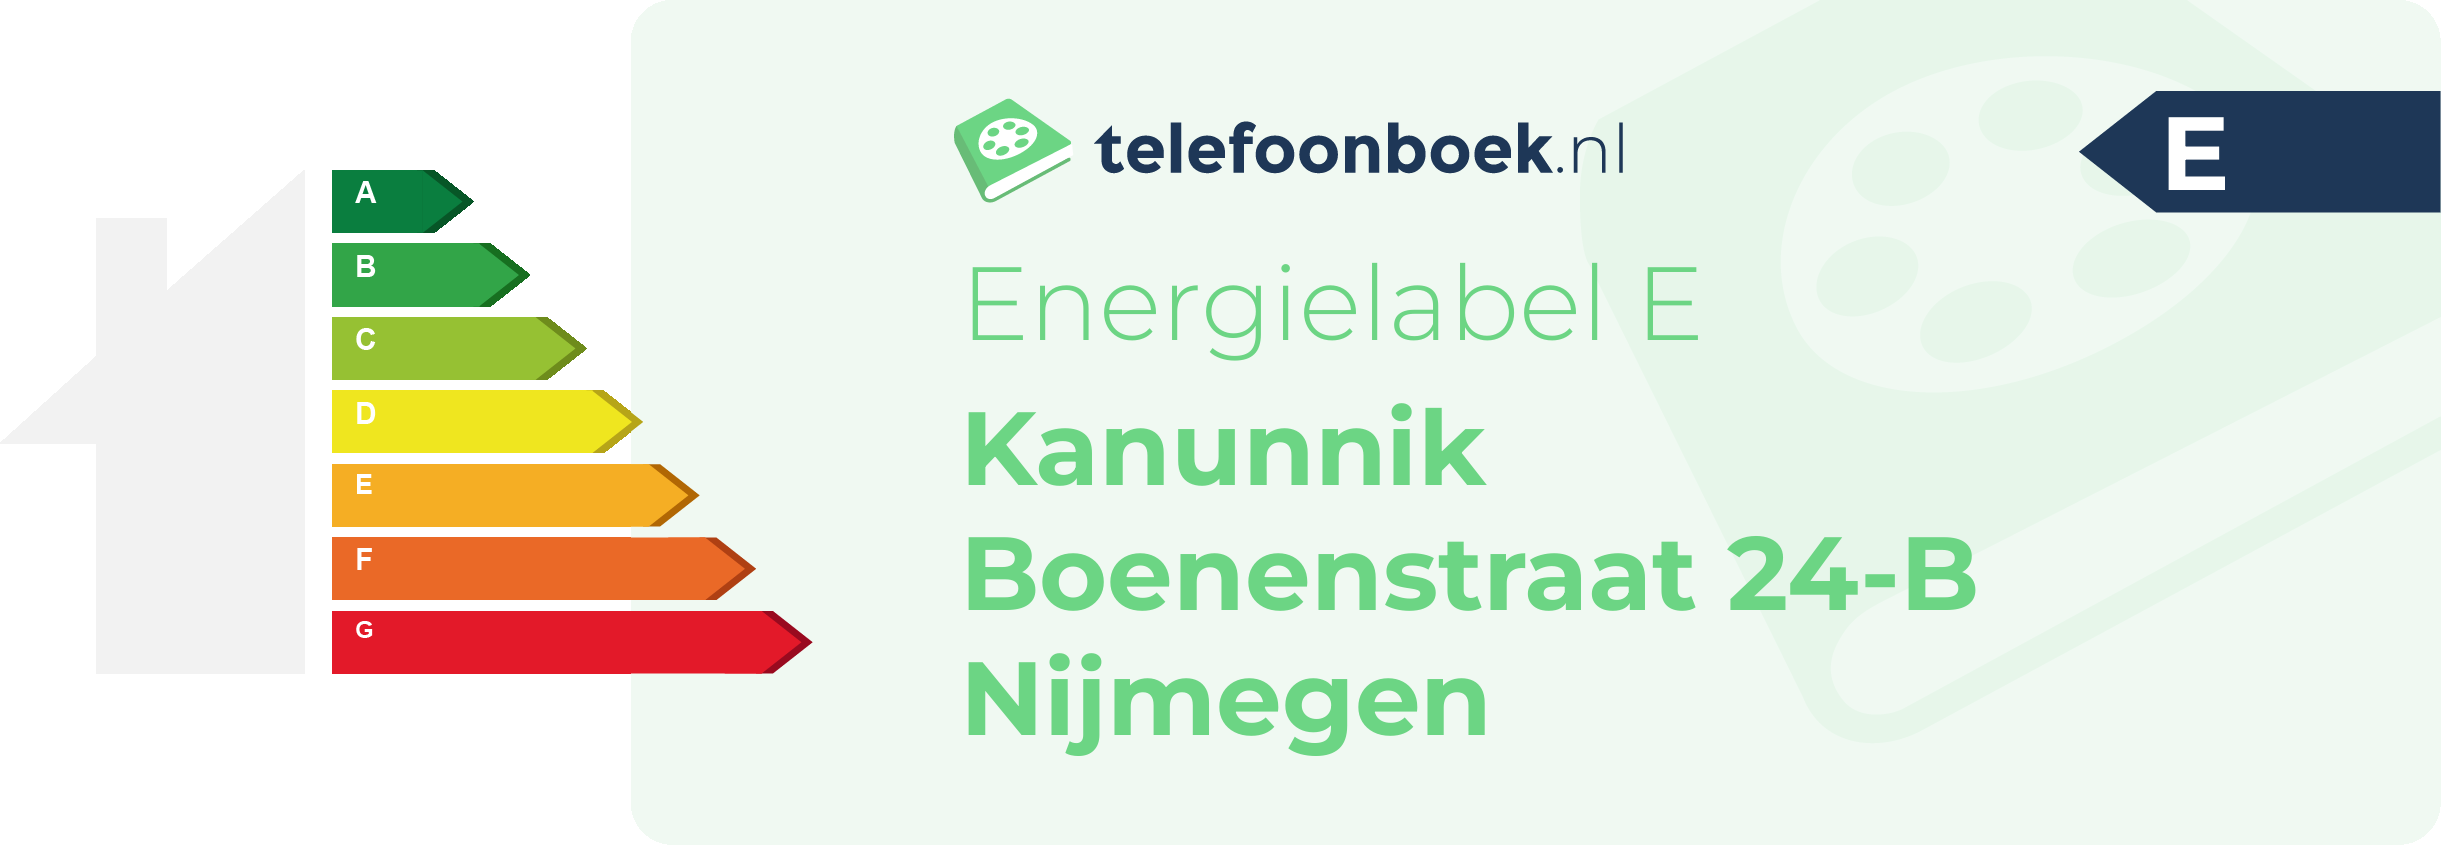 Energielabel Kanunnik Boenenstraat 24-B Nijmegen